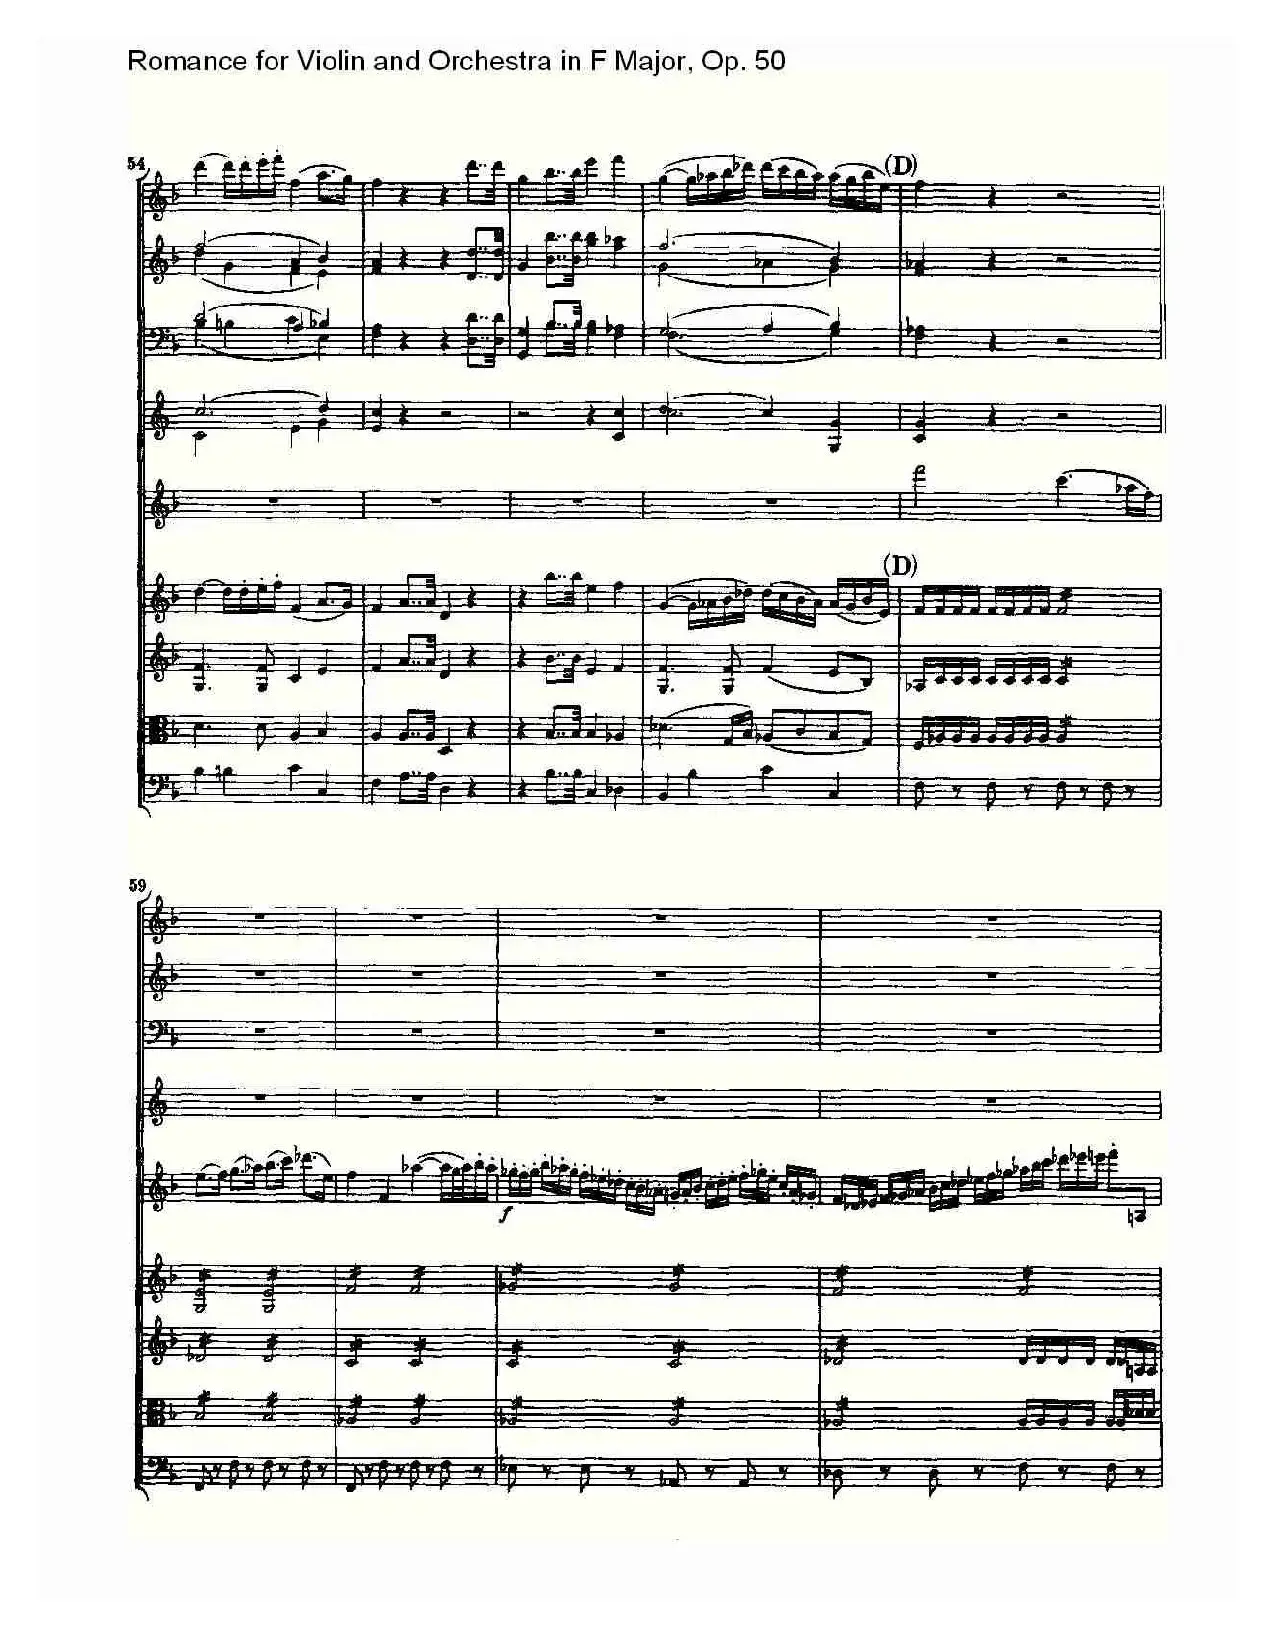 小提琴与管弦乐奏F大调浪漫曲 Op.50